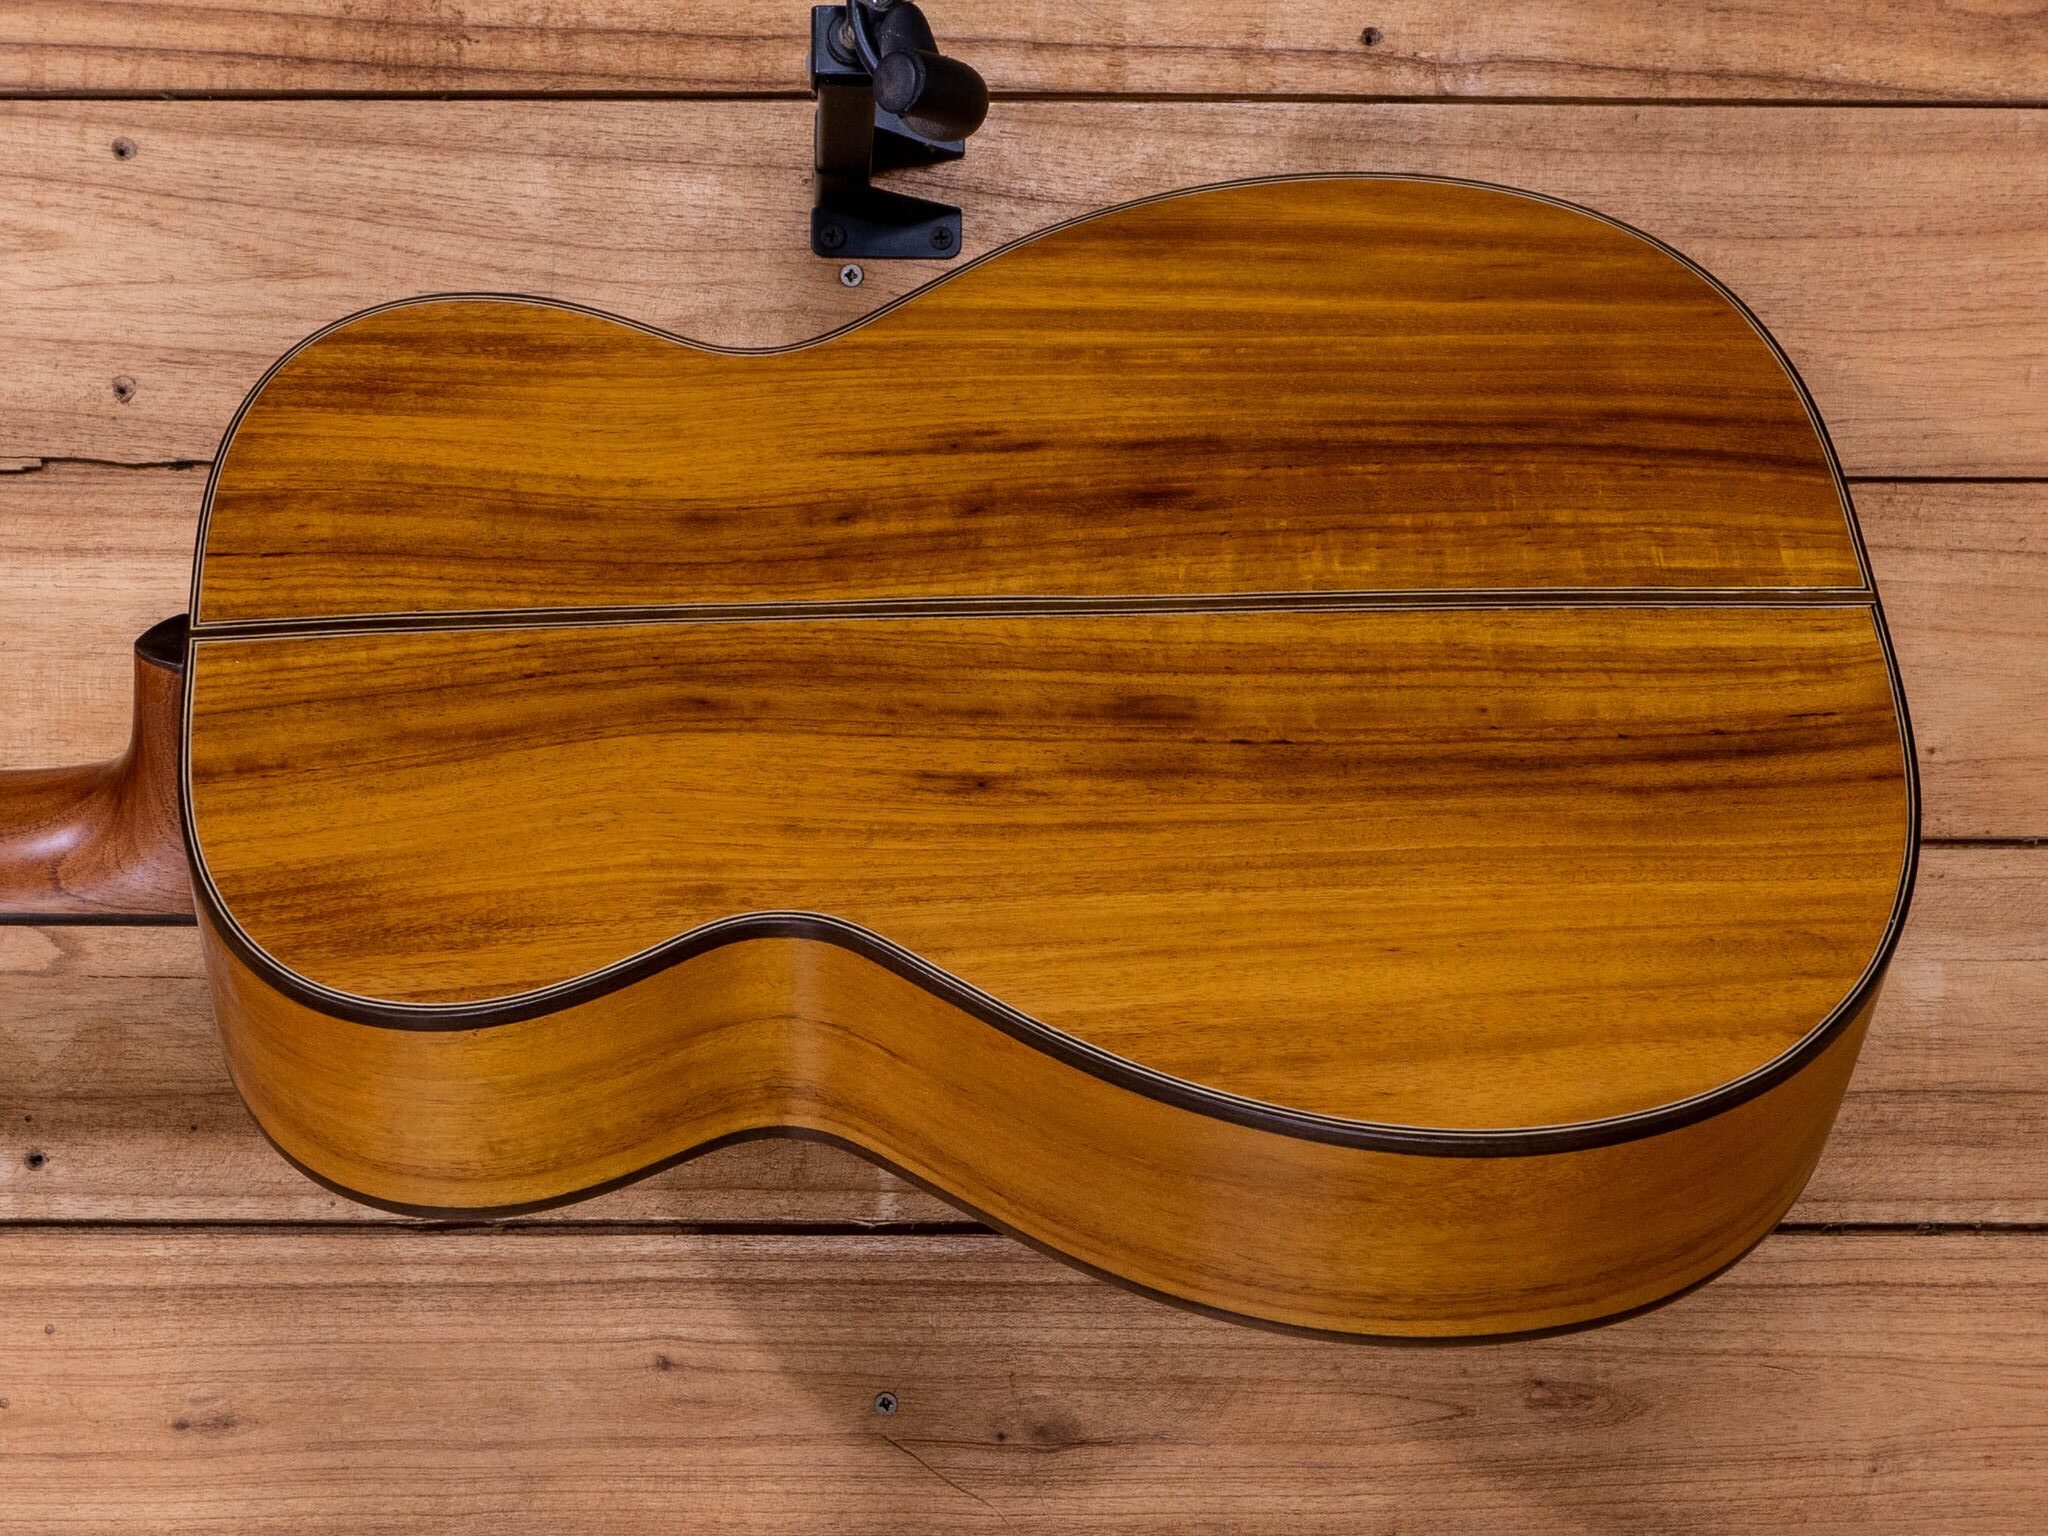 guitar-made-of-jackfruit-wood-fruitwood